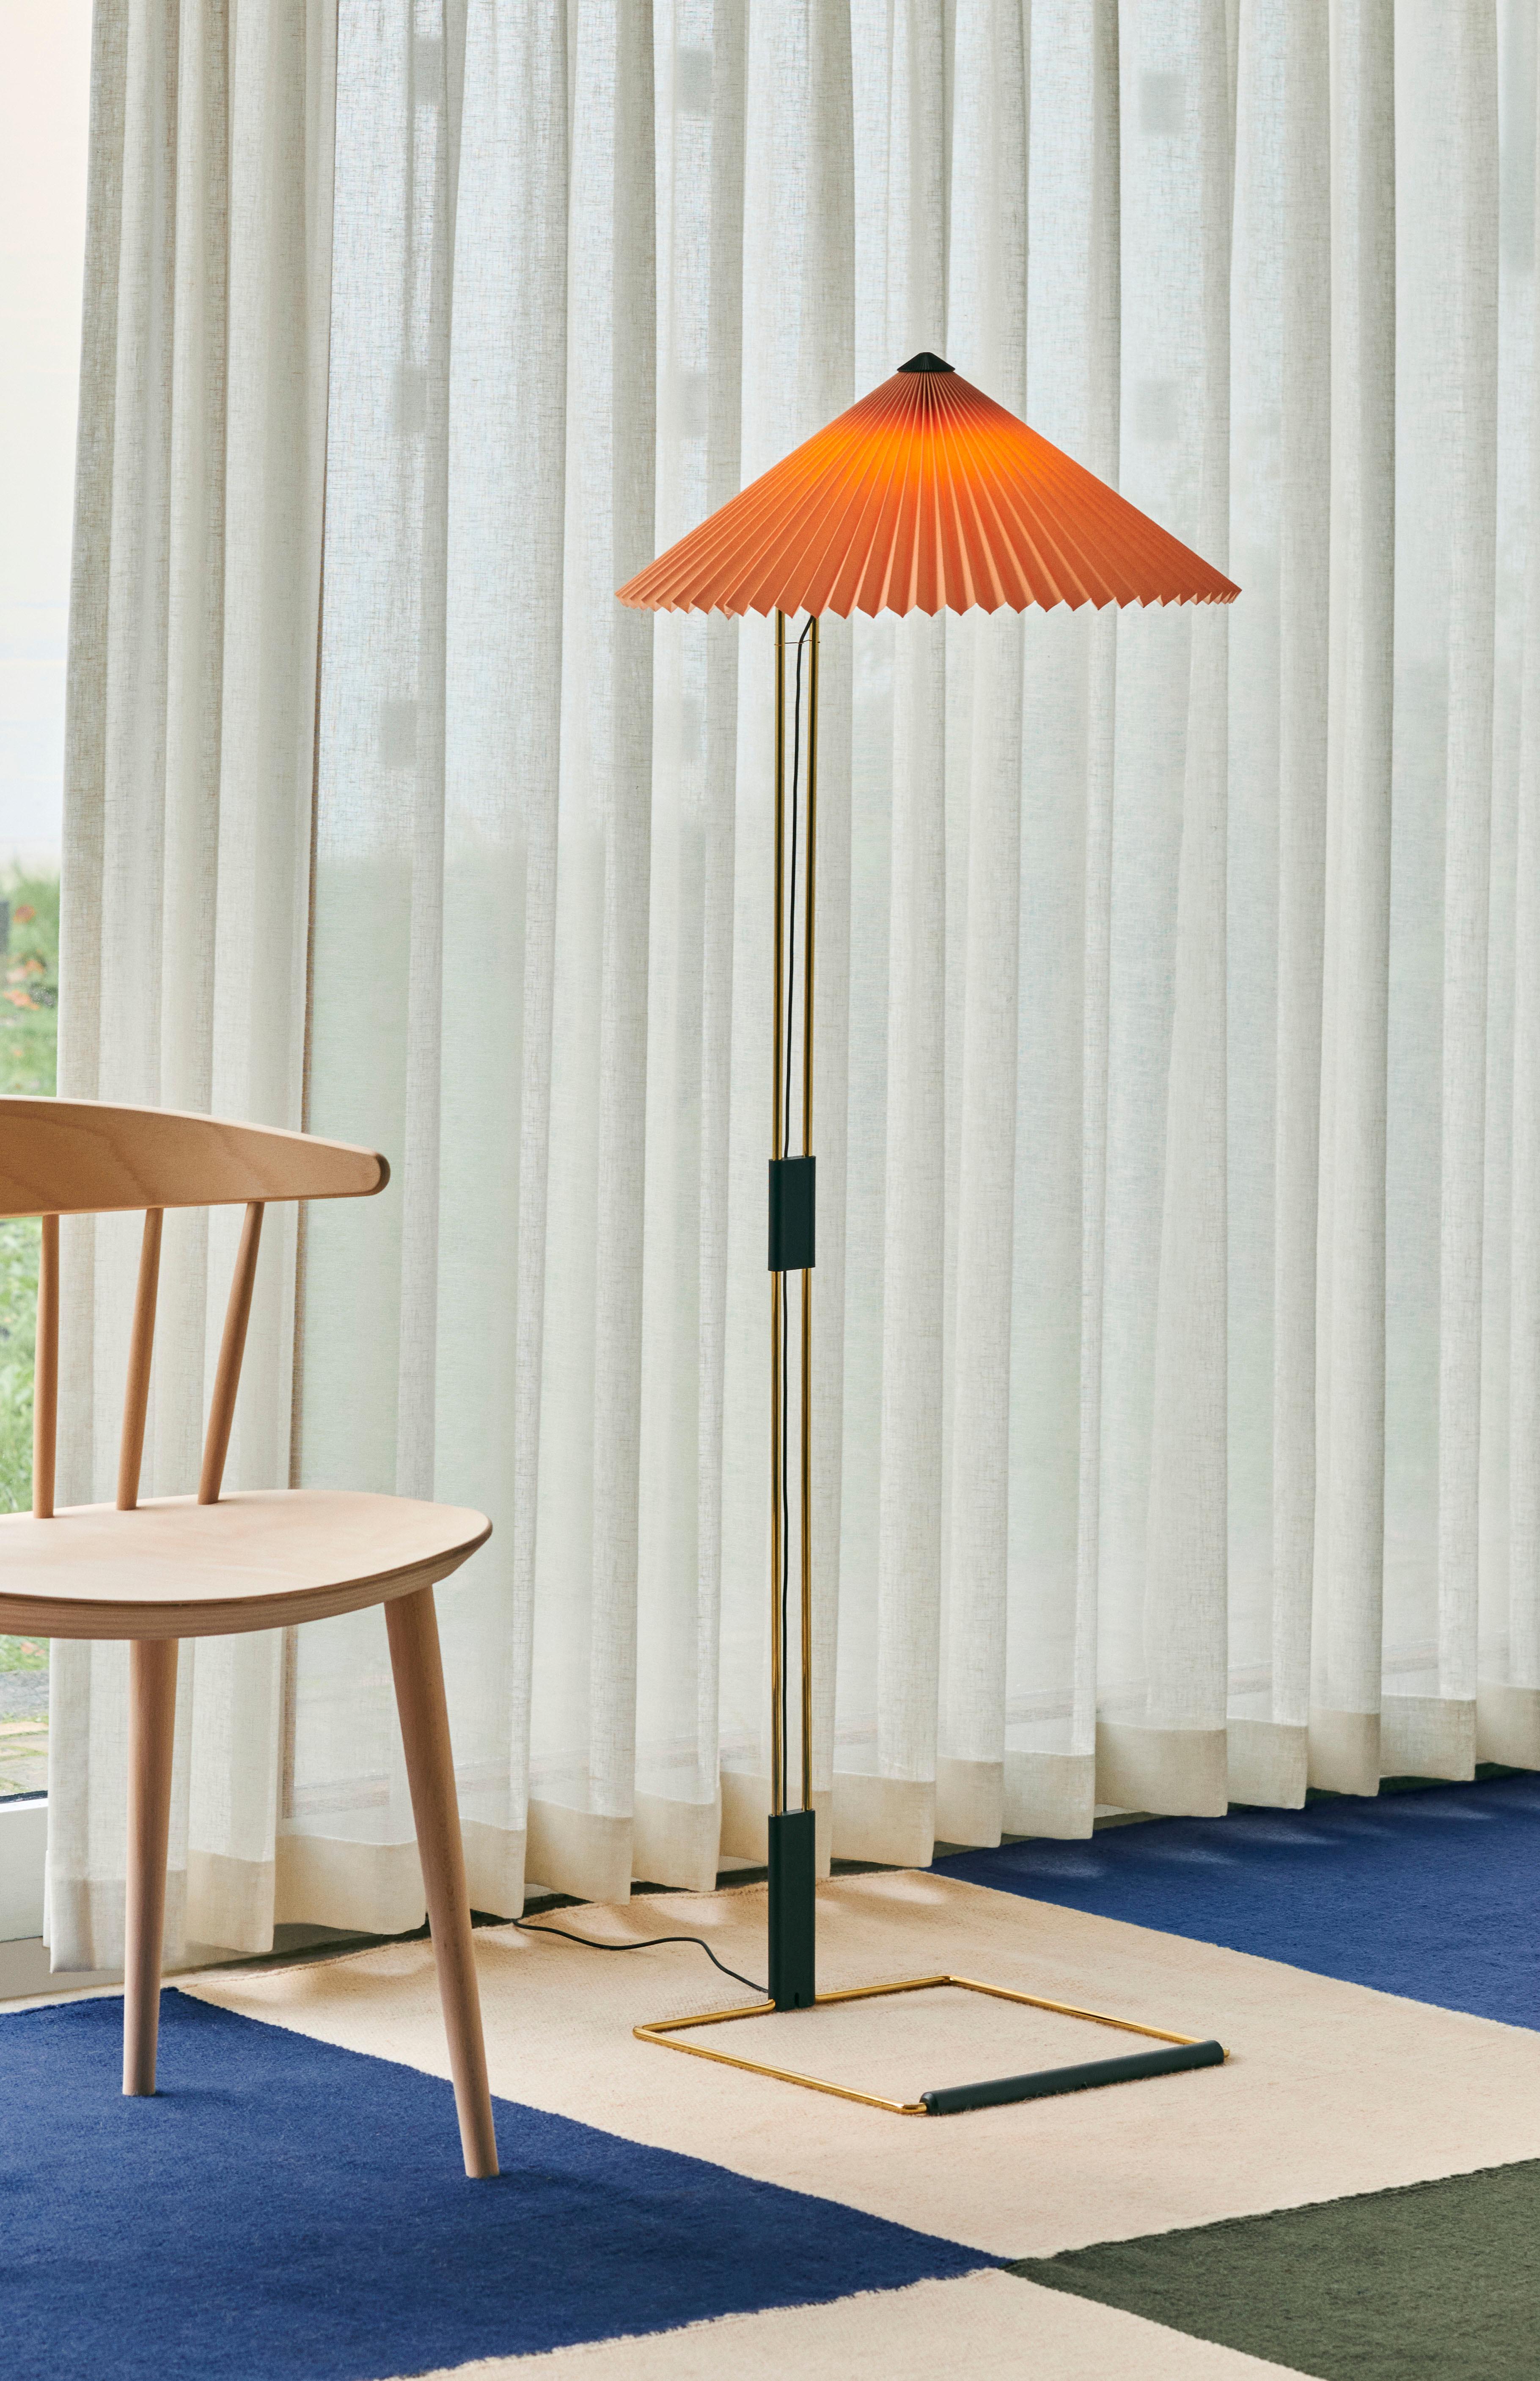 
Le lampadaire Matin offre un design à la fois contemporain et poétique, avec une construction qui allie délicatesse visuelle et robustesse physique. 

La conception à plat se compose d'un cadre élancé en acier en laiton poli complété par une